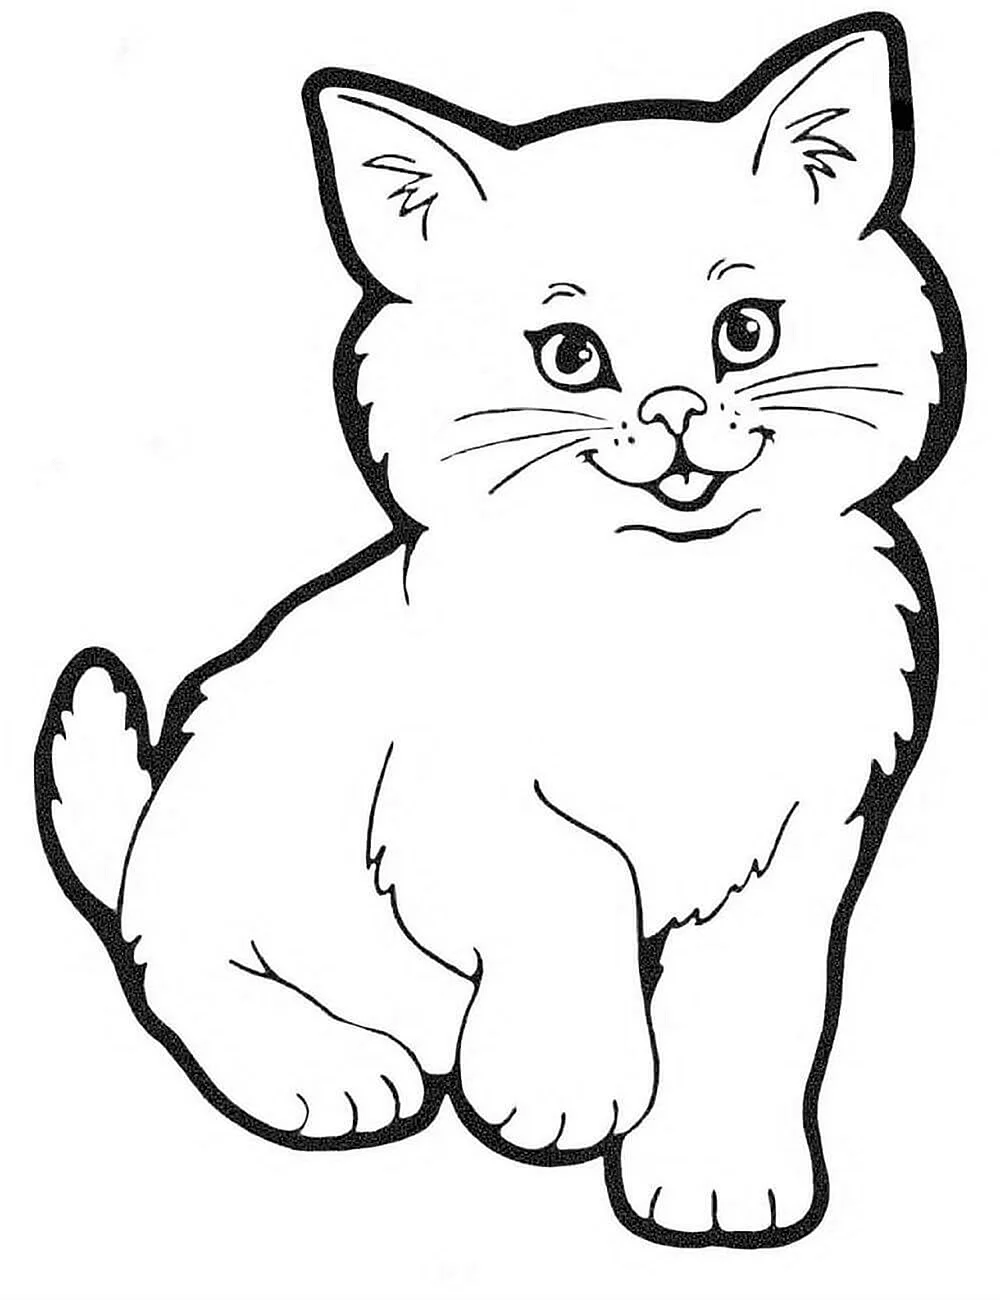 Рисунок котенка для раскрашивания